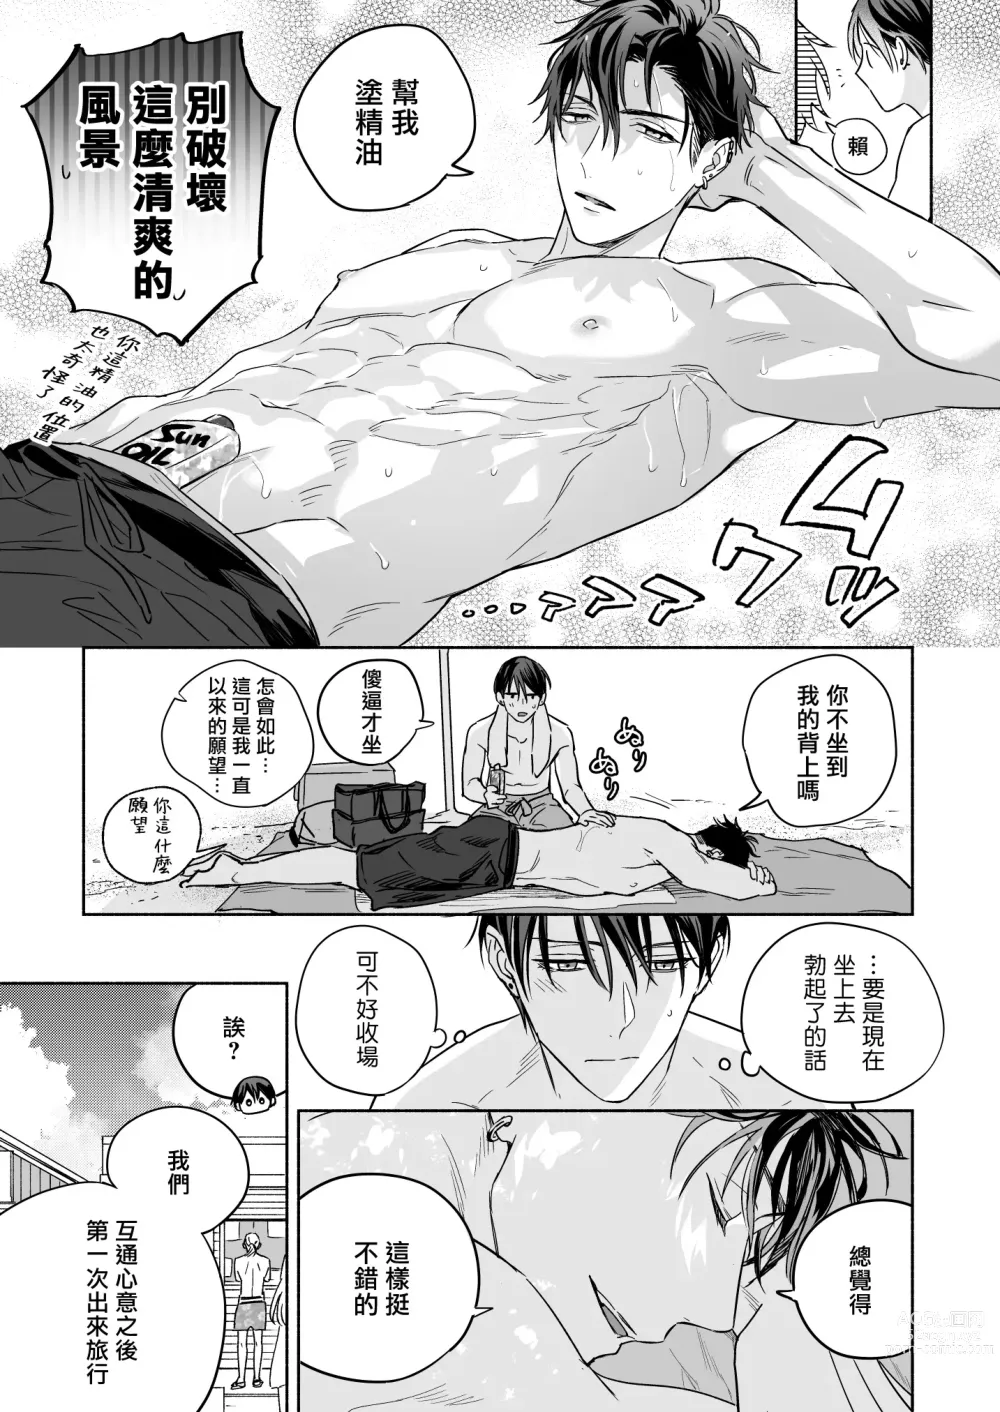 Page 11 of doujinshi 你选上面还是下面? 03